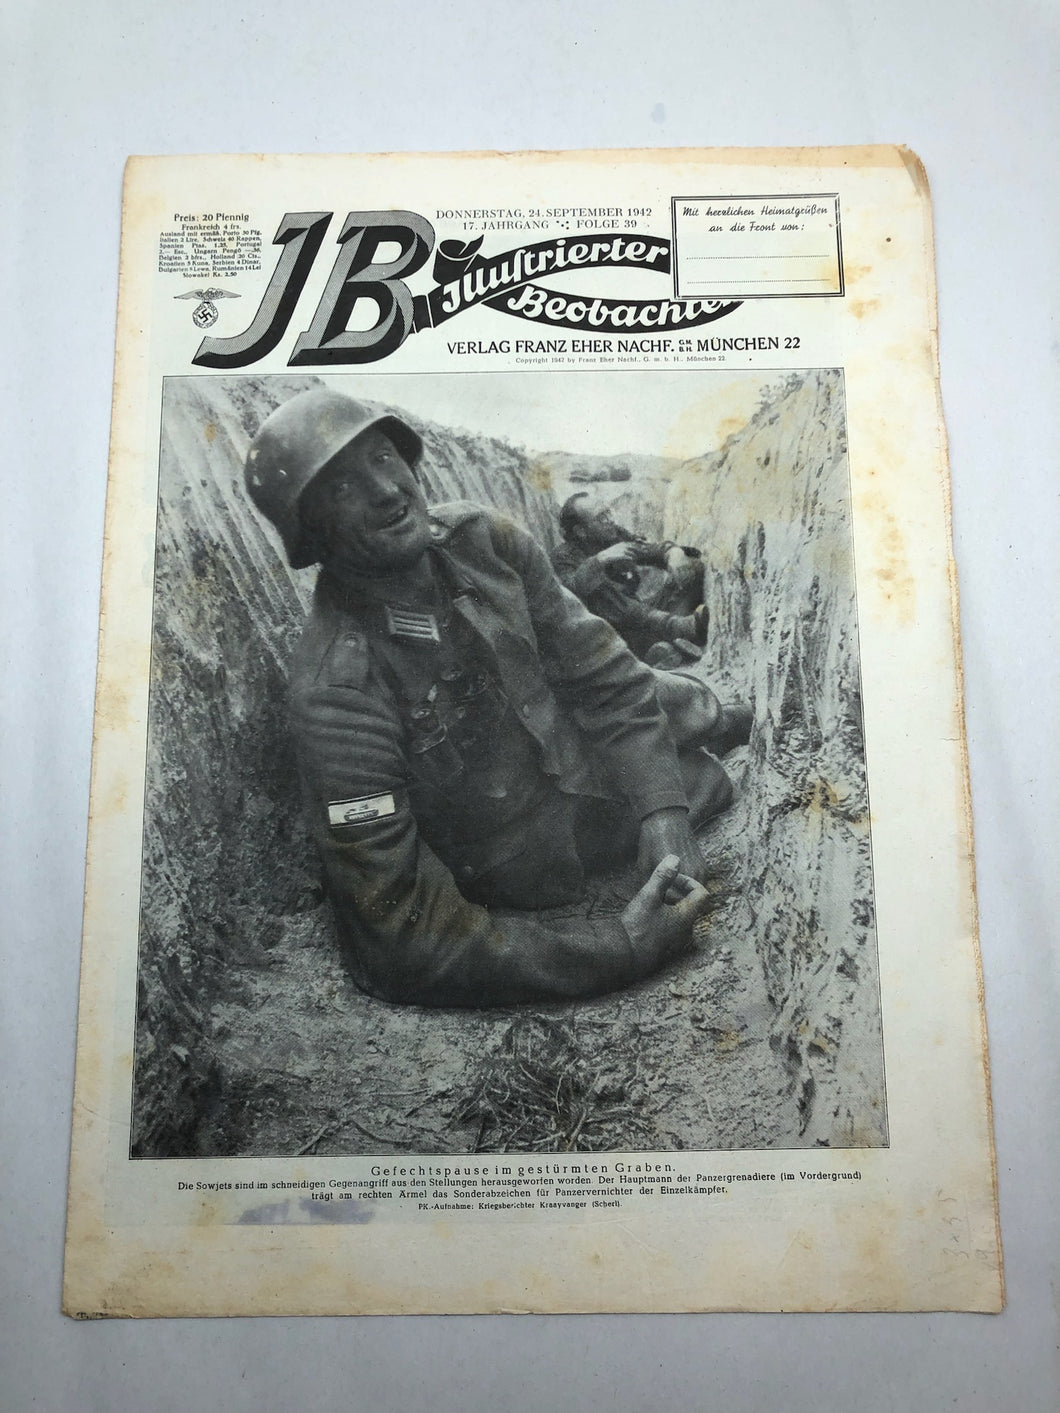 JB Juustrierter Beobachter NSDAP Magazine Original WW2 German - 24 September 1942